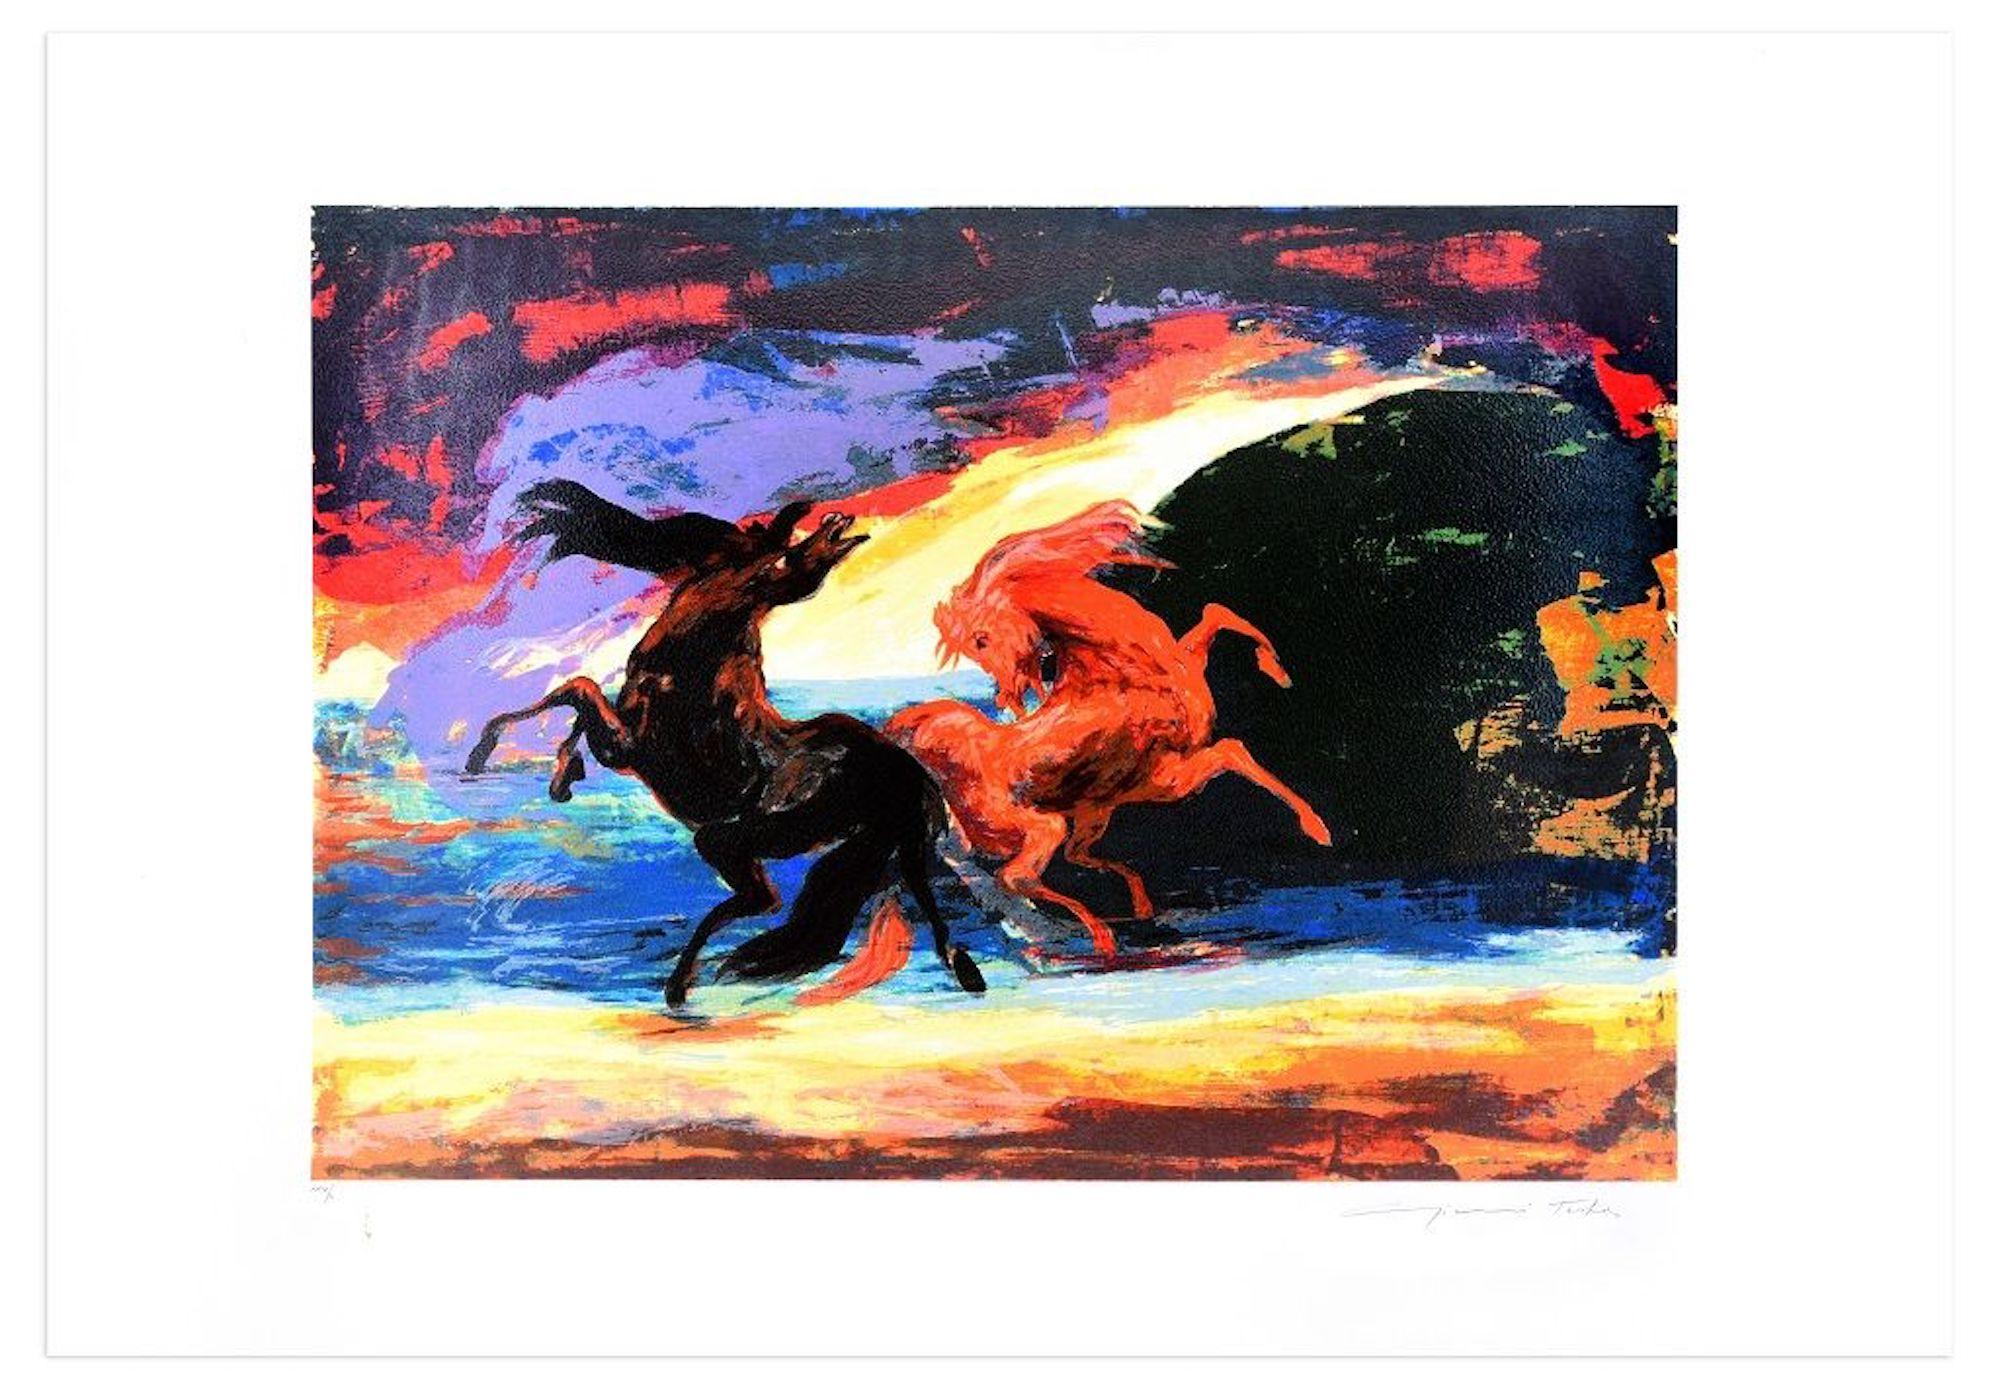 Horse Carousel est une estampe originale réalisée par l'artiste italien Gianni Testa (1936) en 1986.

Sérigraphie aux couleurs mélangées. 

Signé à la main par l'artiste en bas à droite. Numéroté en bas à gauche. Edition XXIX / L.

Très bonnes